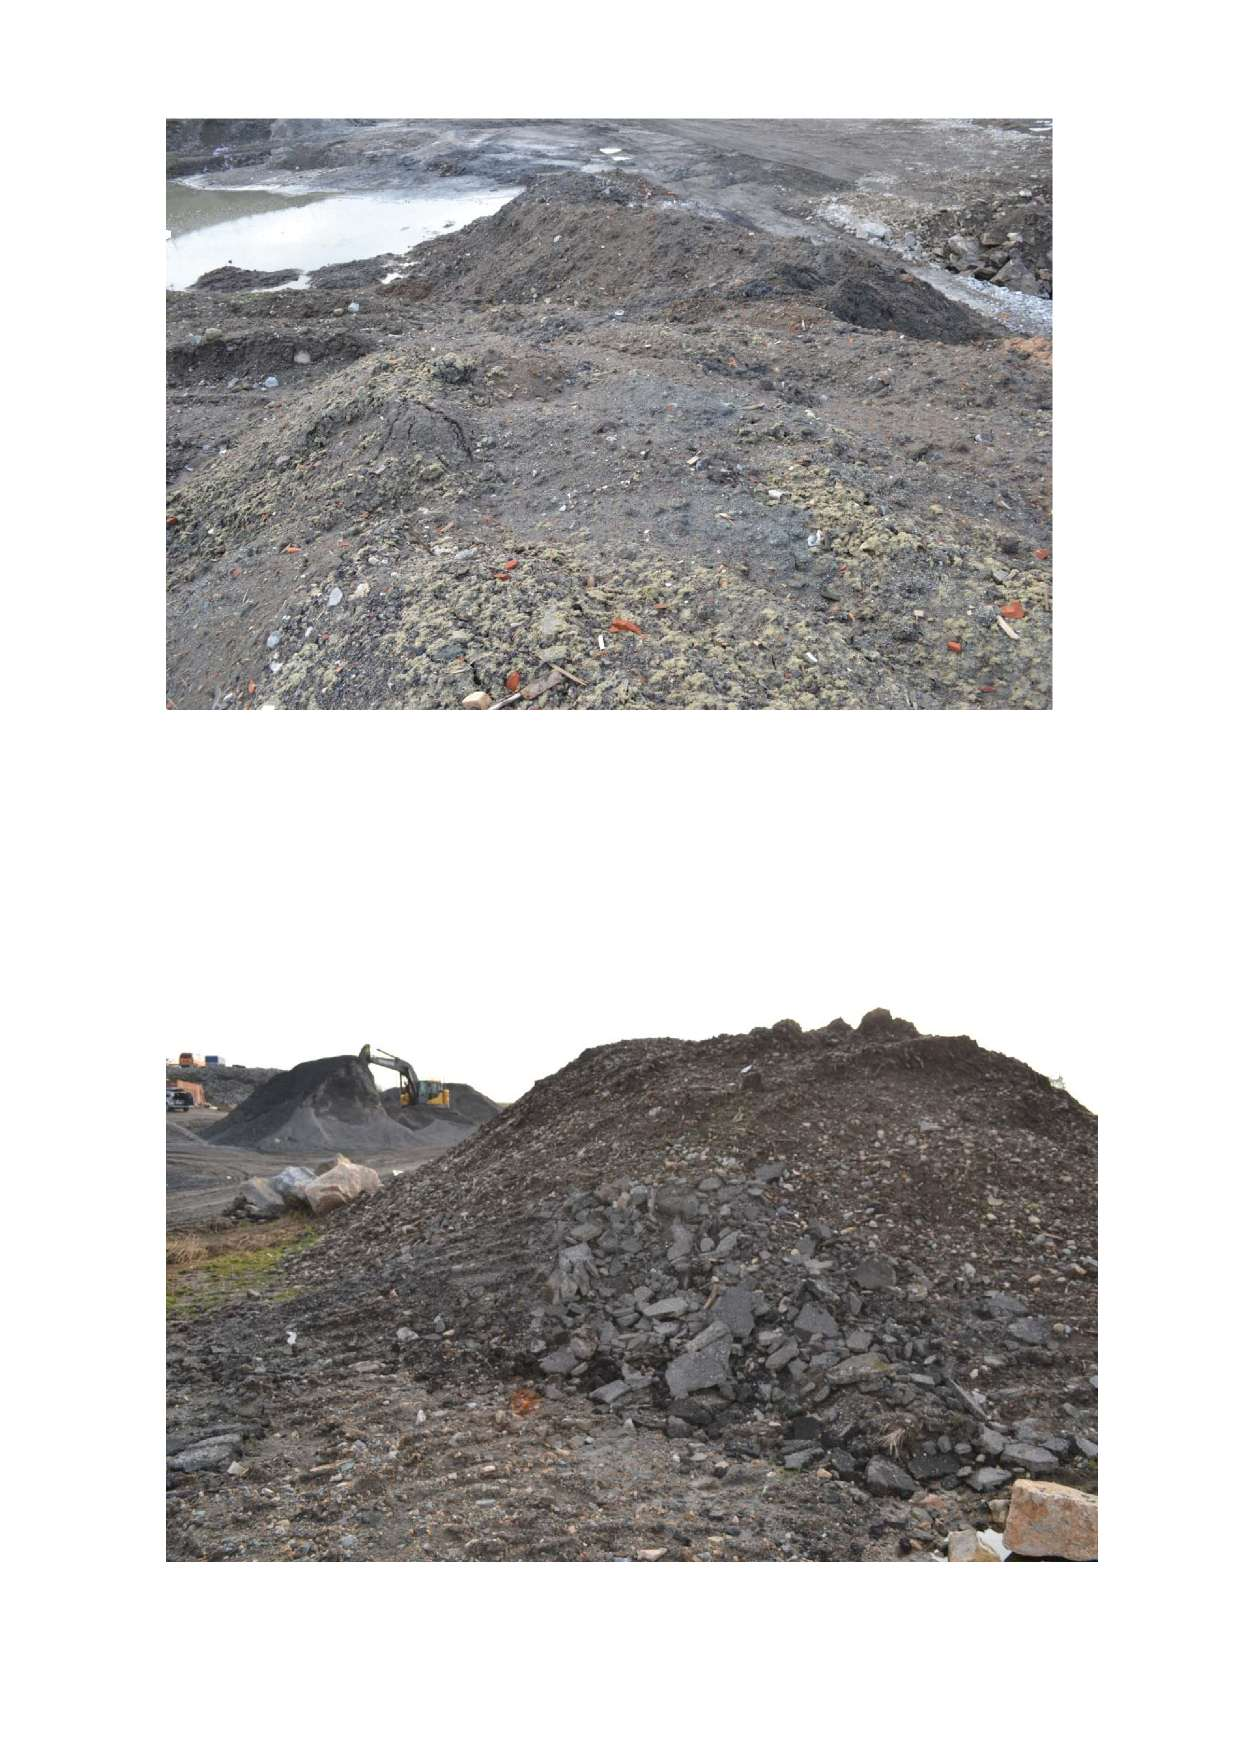 Bilde 2. Jordmasser med innslag av bygningsavfall (mineralull og teglrester).